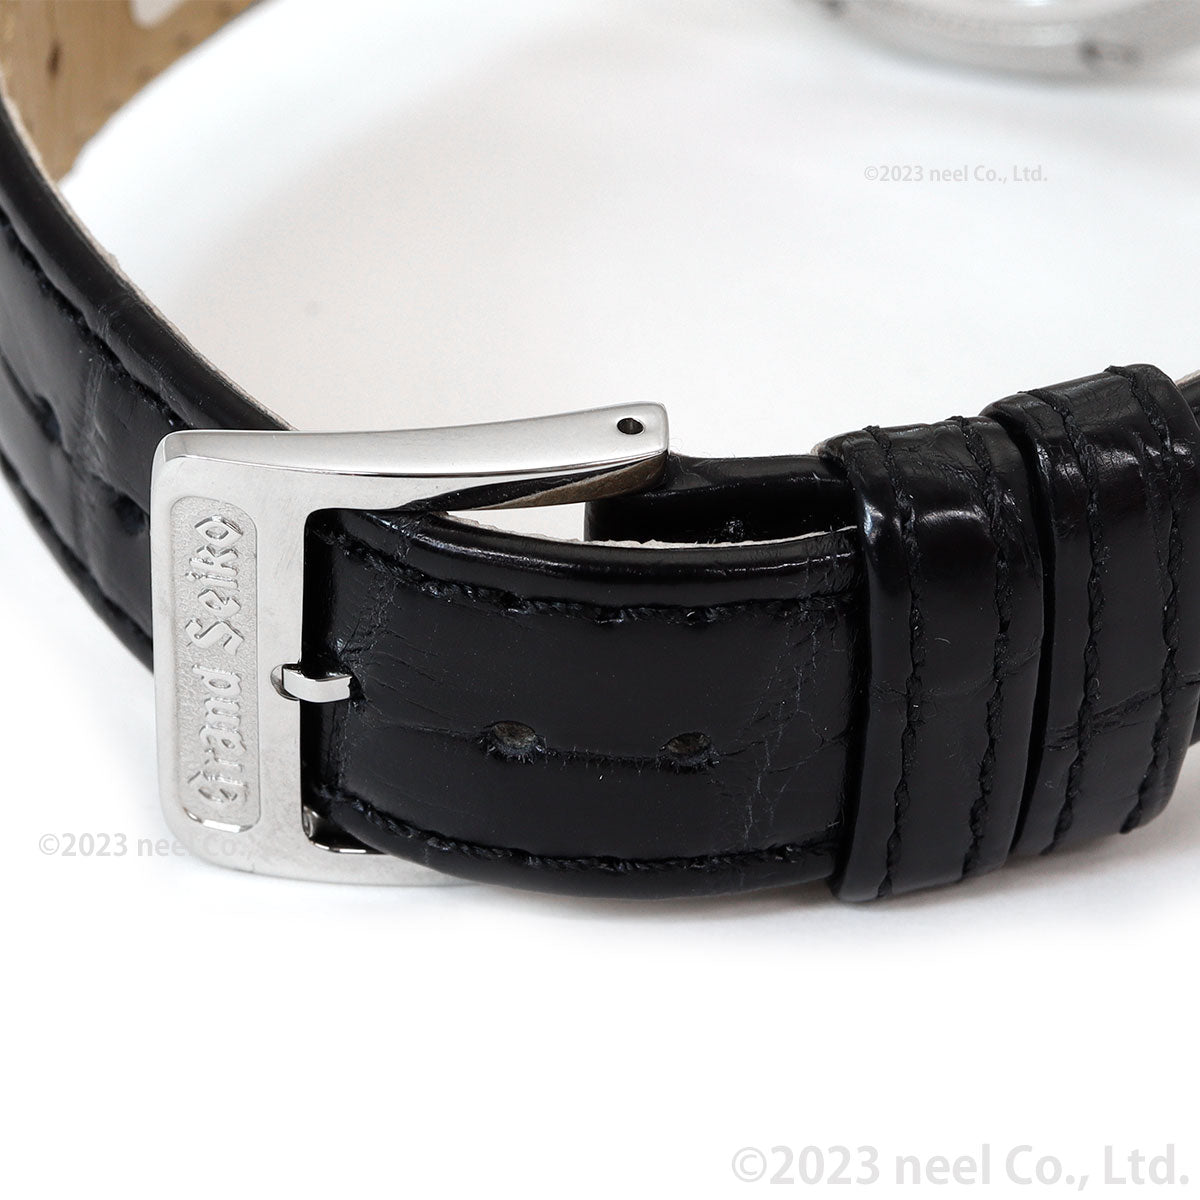 【36回分割手数料無料！】グランドセイコー GRAND SEIKO メカニカル 手巻き 腕時計 メンズ Elegance Collection SBGW301【2024 新作】